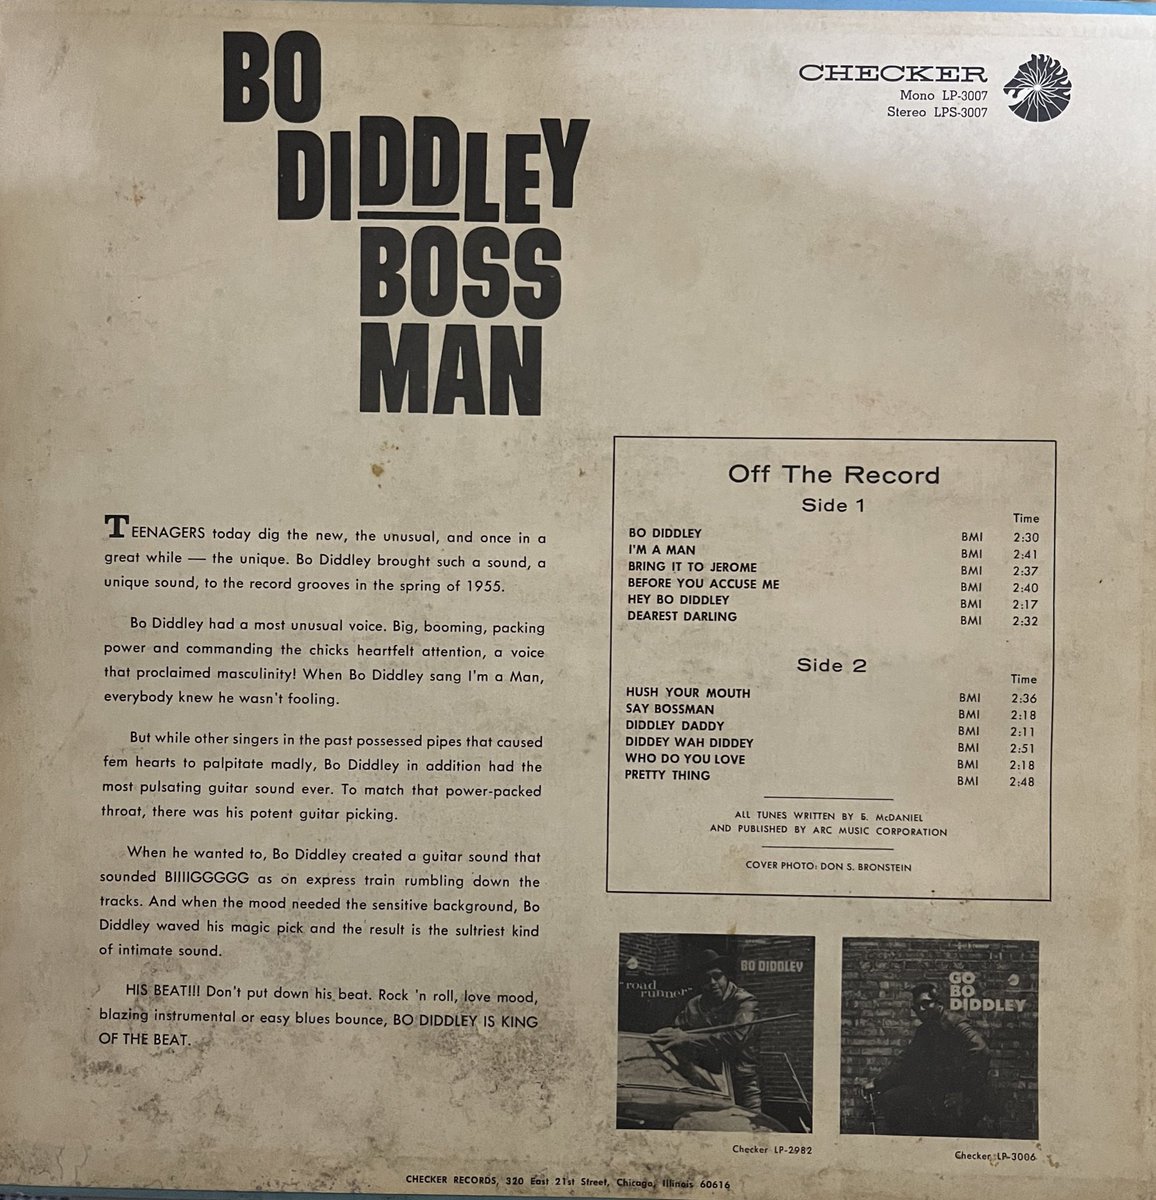 今日はこの曲でおやすみなさい💤
Bo Diddley 「I'm A Man」
#blues #rocknroll 

youtu.be/OKlAiuaYdoI?si…